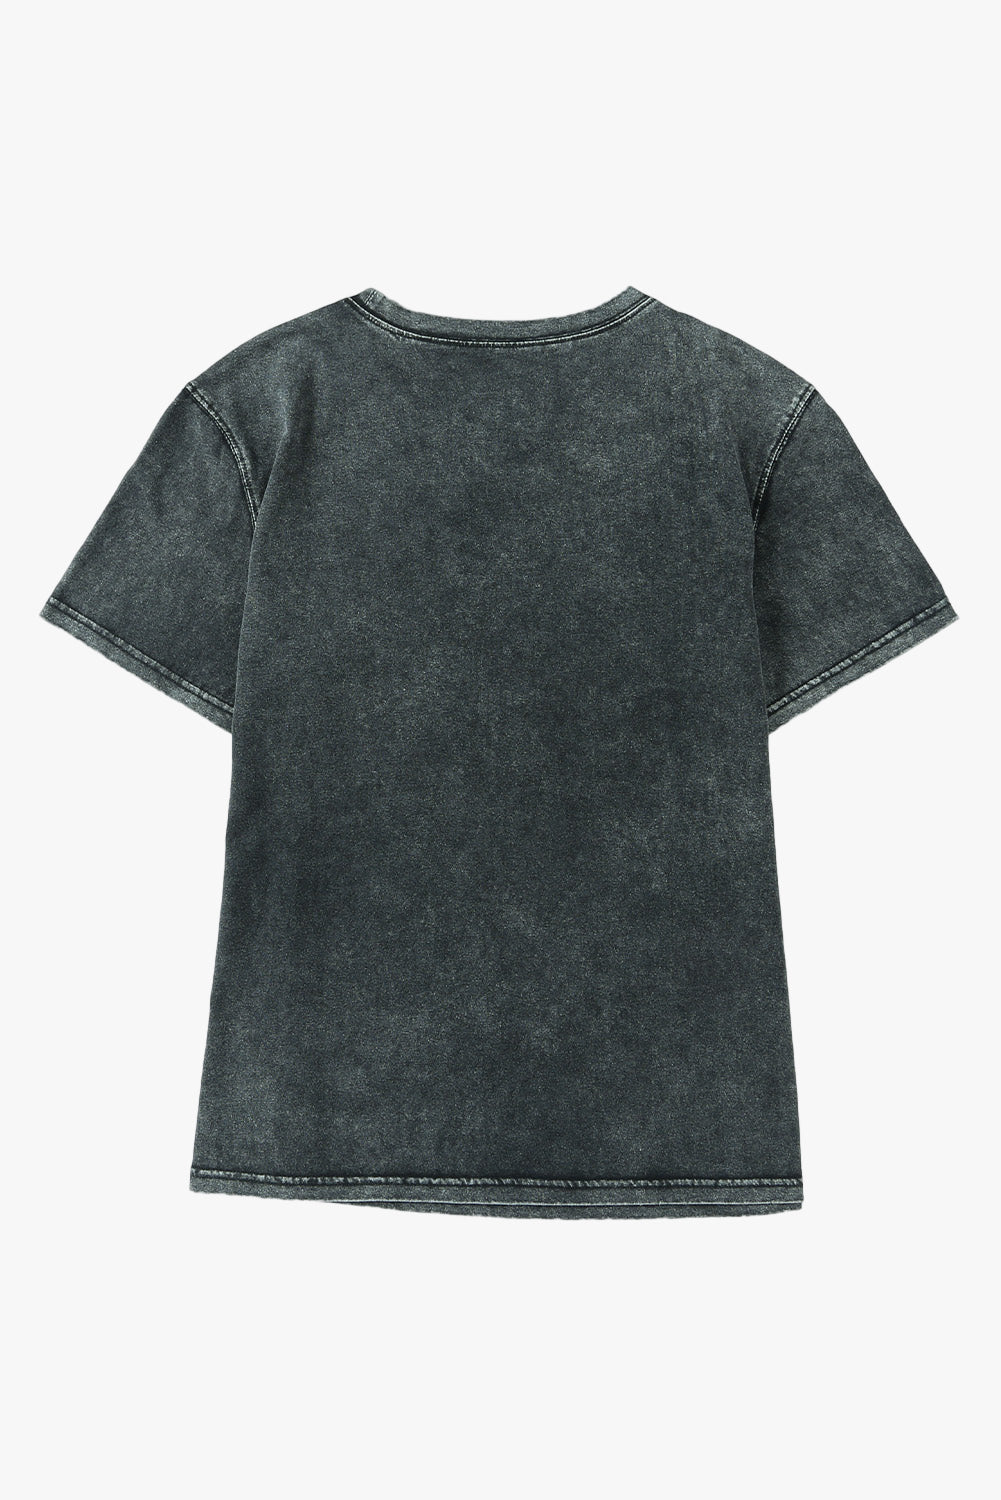 Schwarzes, mineralgewaschenes, lässiges Kurzarm-T-Shirt